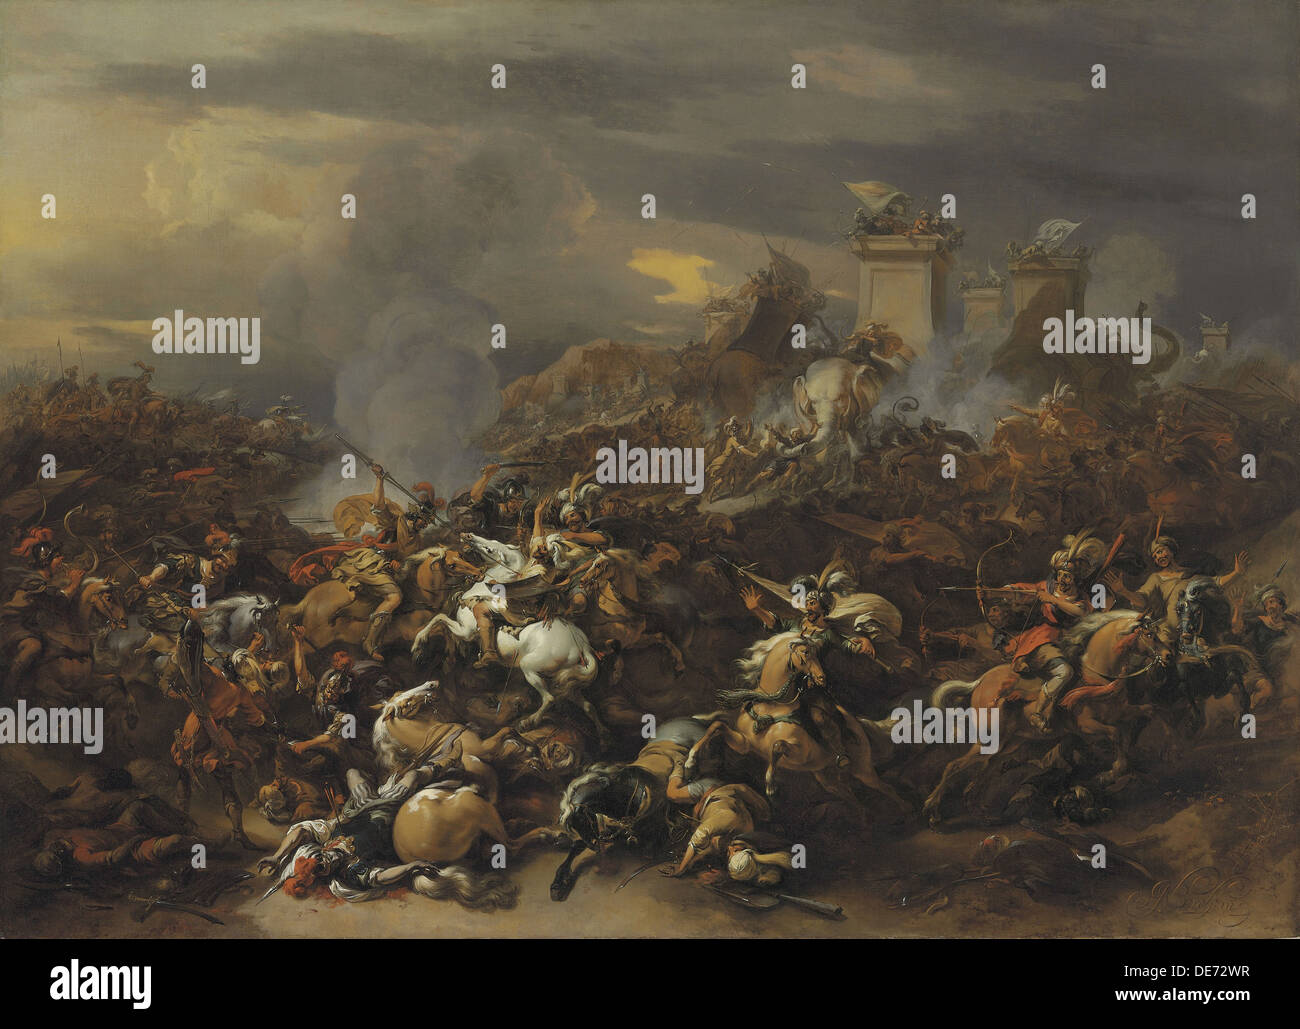 La batalla de Alejandro Magno contra el rey Porus. Artista: Berchem, Nicolaes Pietersz (Claes), el anciano (1620-1683) Foto de stock